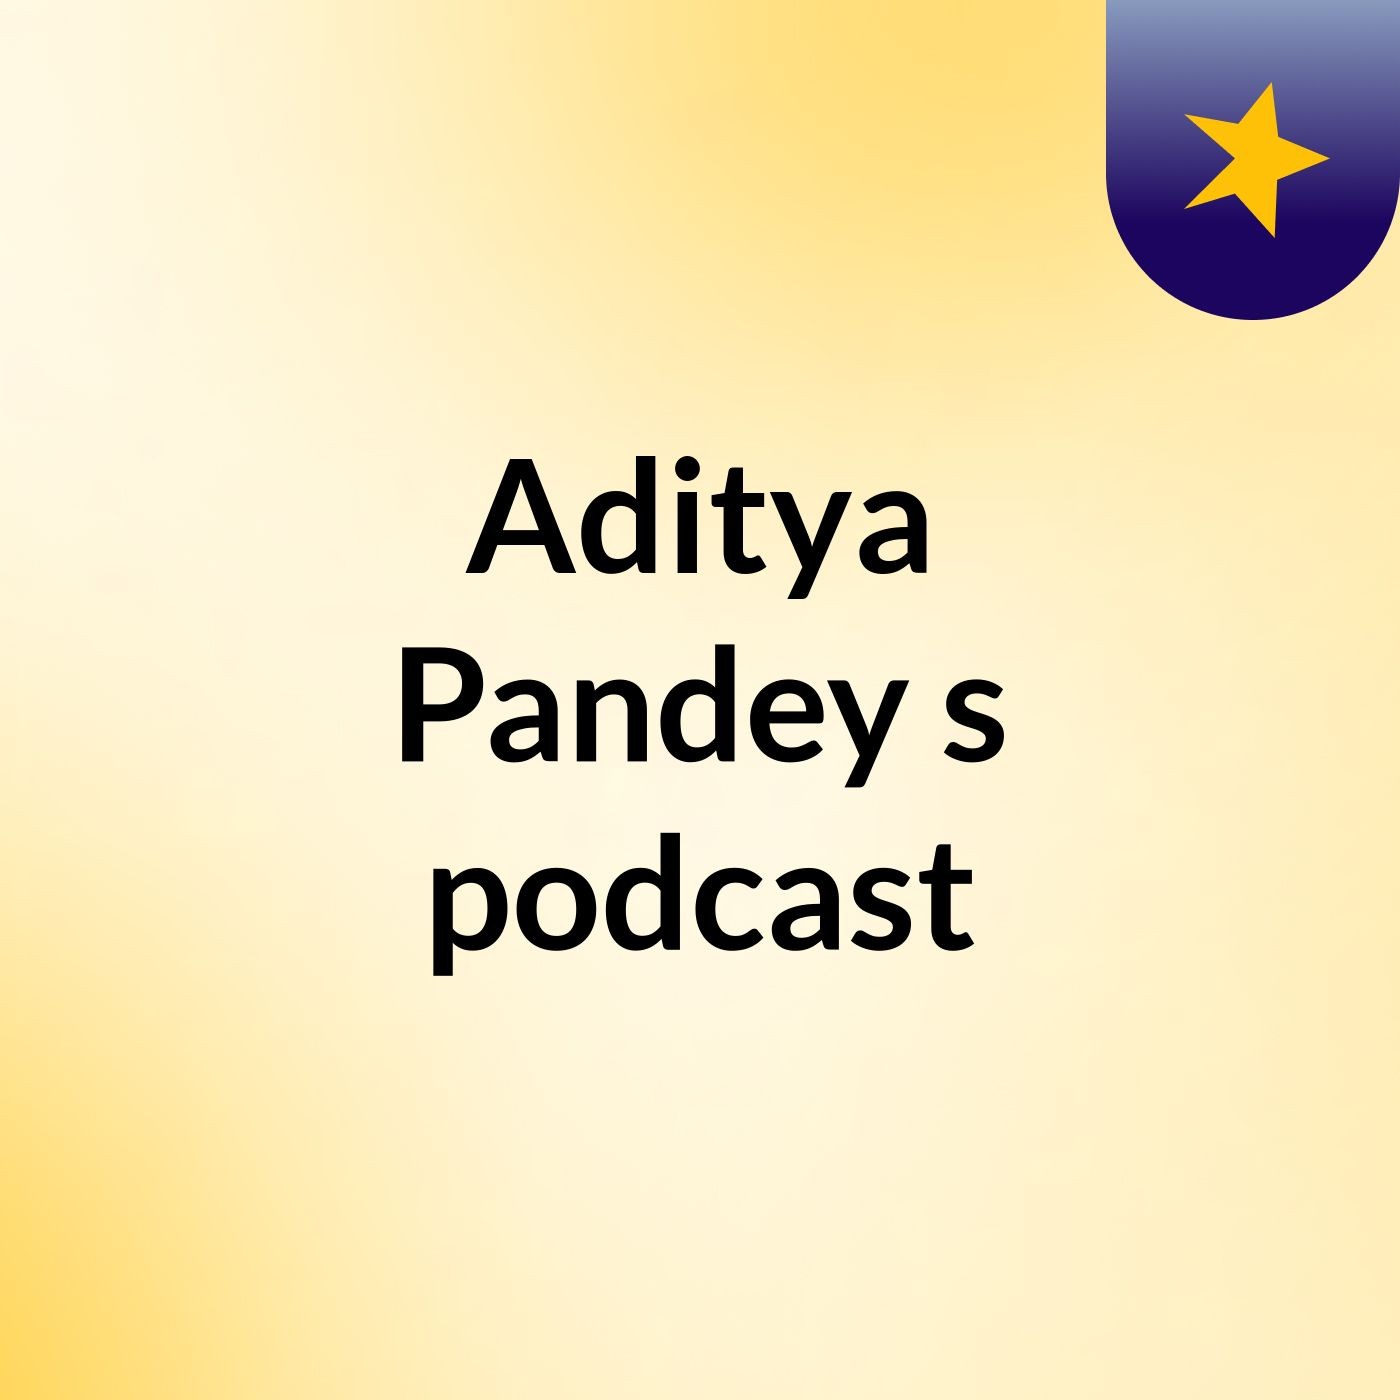 Aditya Pandey's podcast